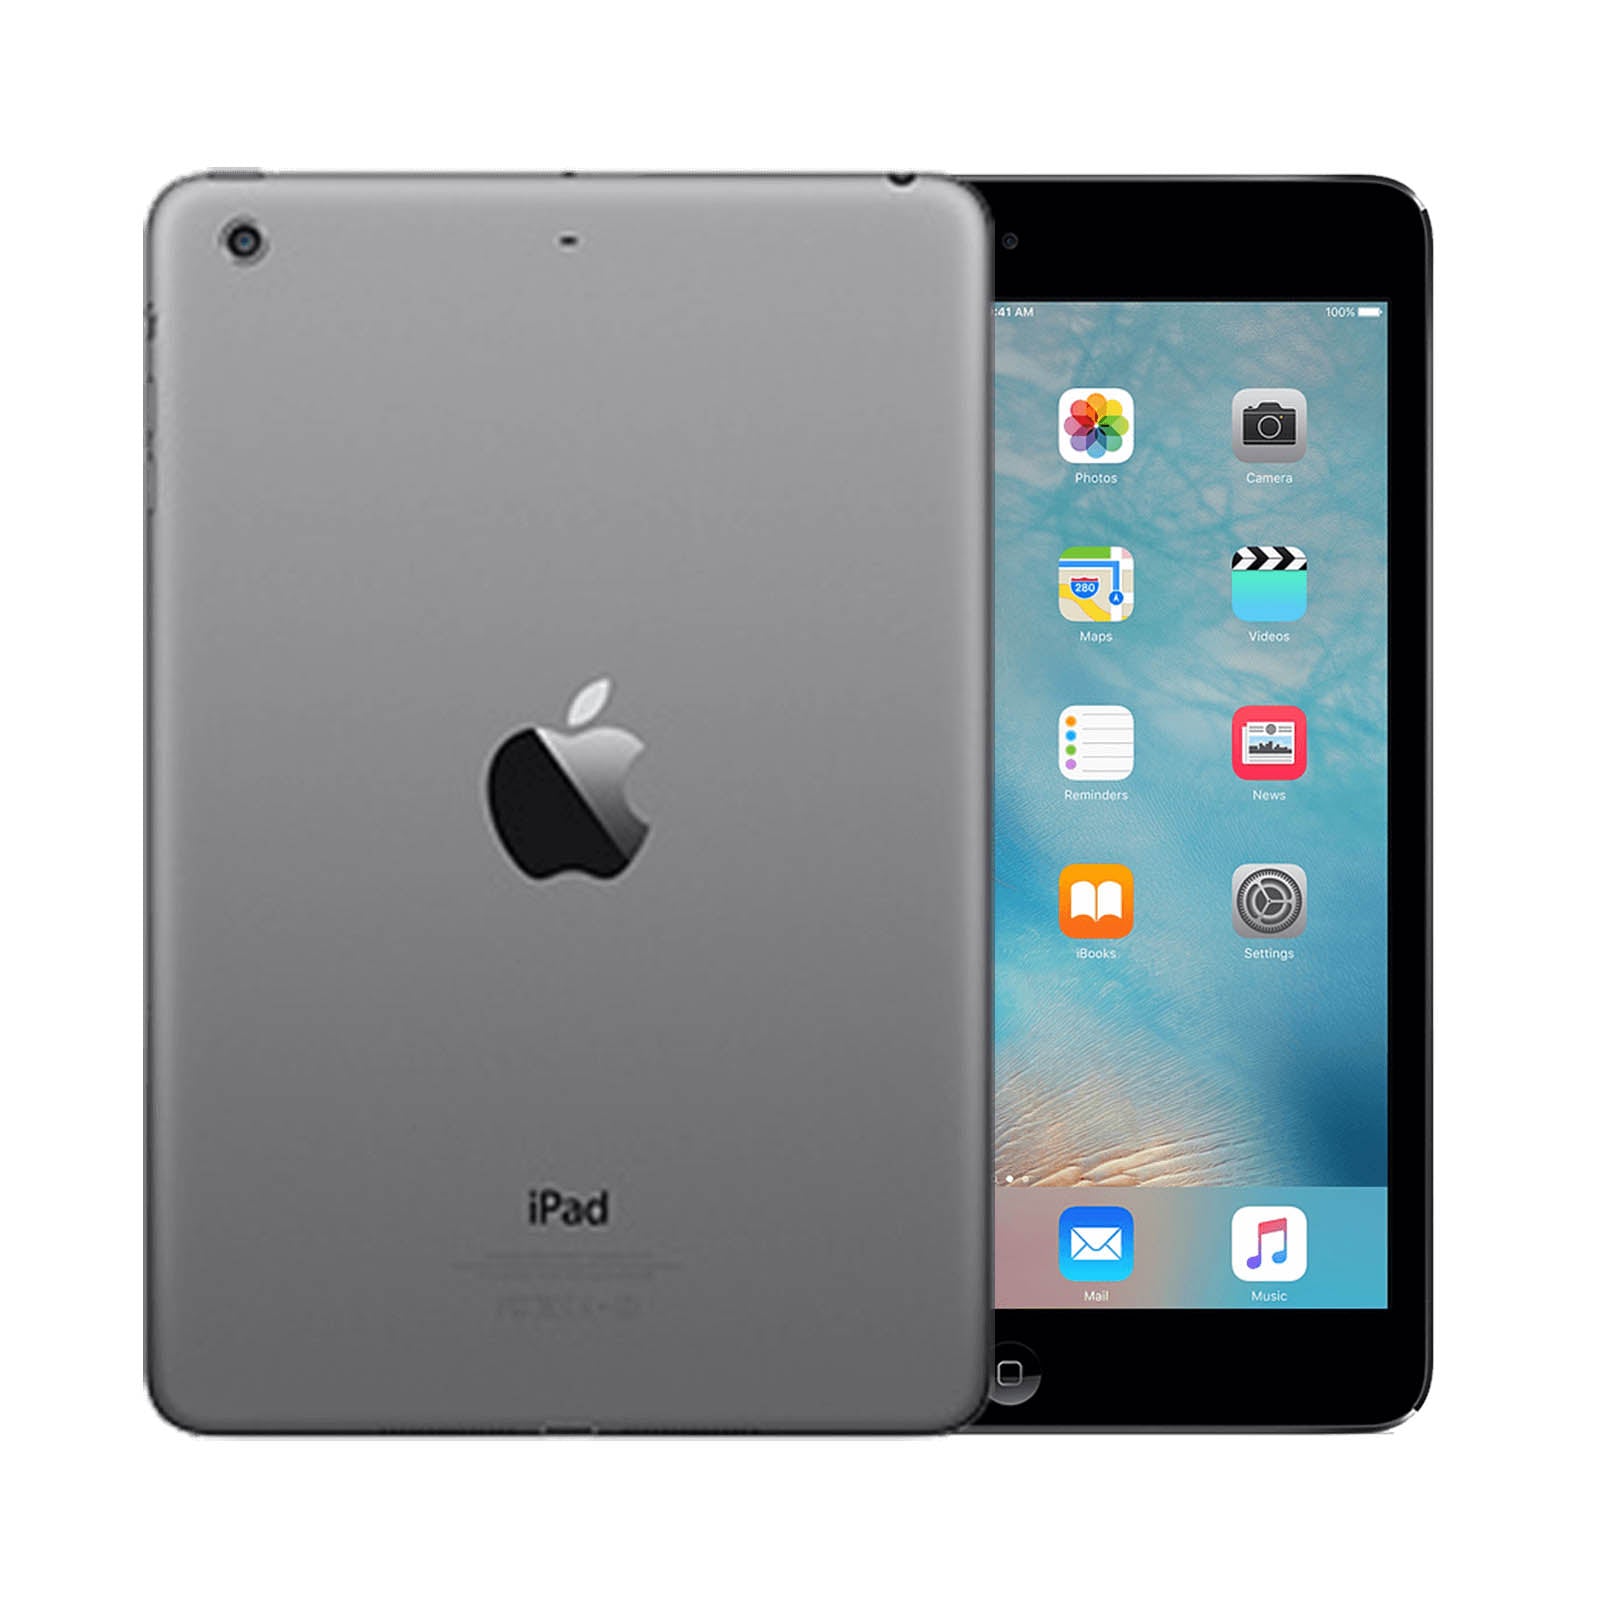 Apple iPad Mini 3 64GB Space Grey Good WiFi & Cellular 64GB Space Grey Good